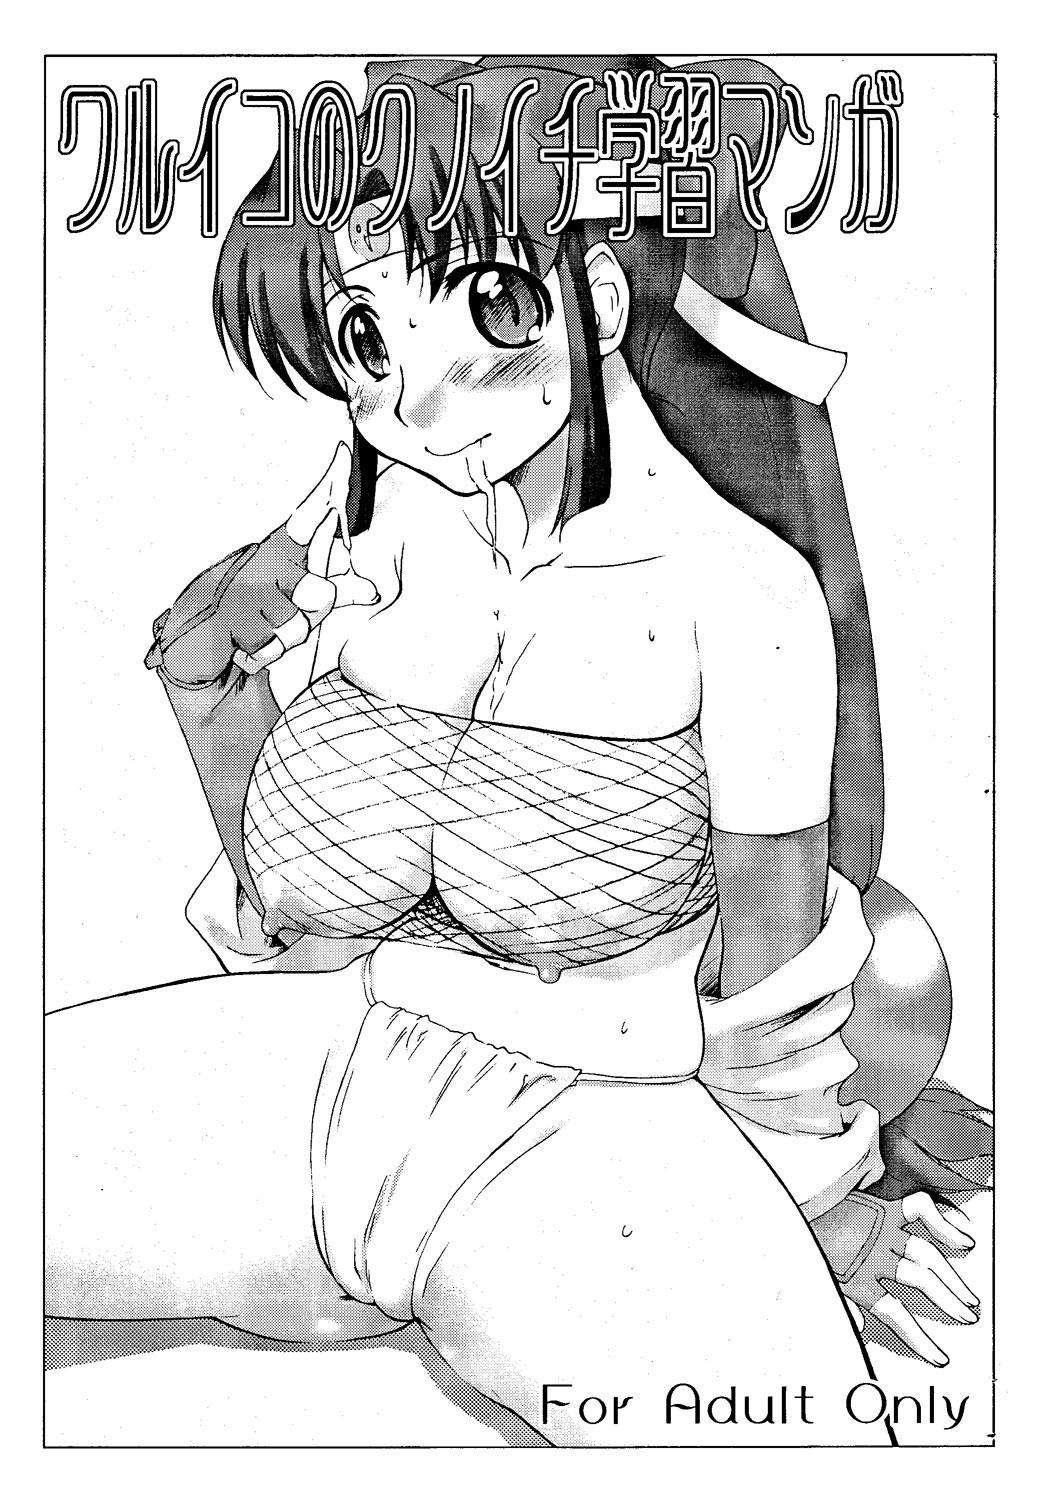 Gay Pornstar Waruiko no Kunoichi Gakushuu Manga - 2x2 shinobuden Skinny - Picture 1